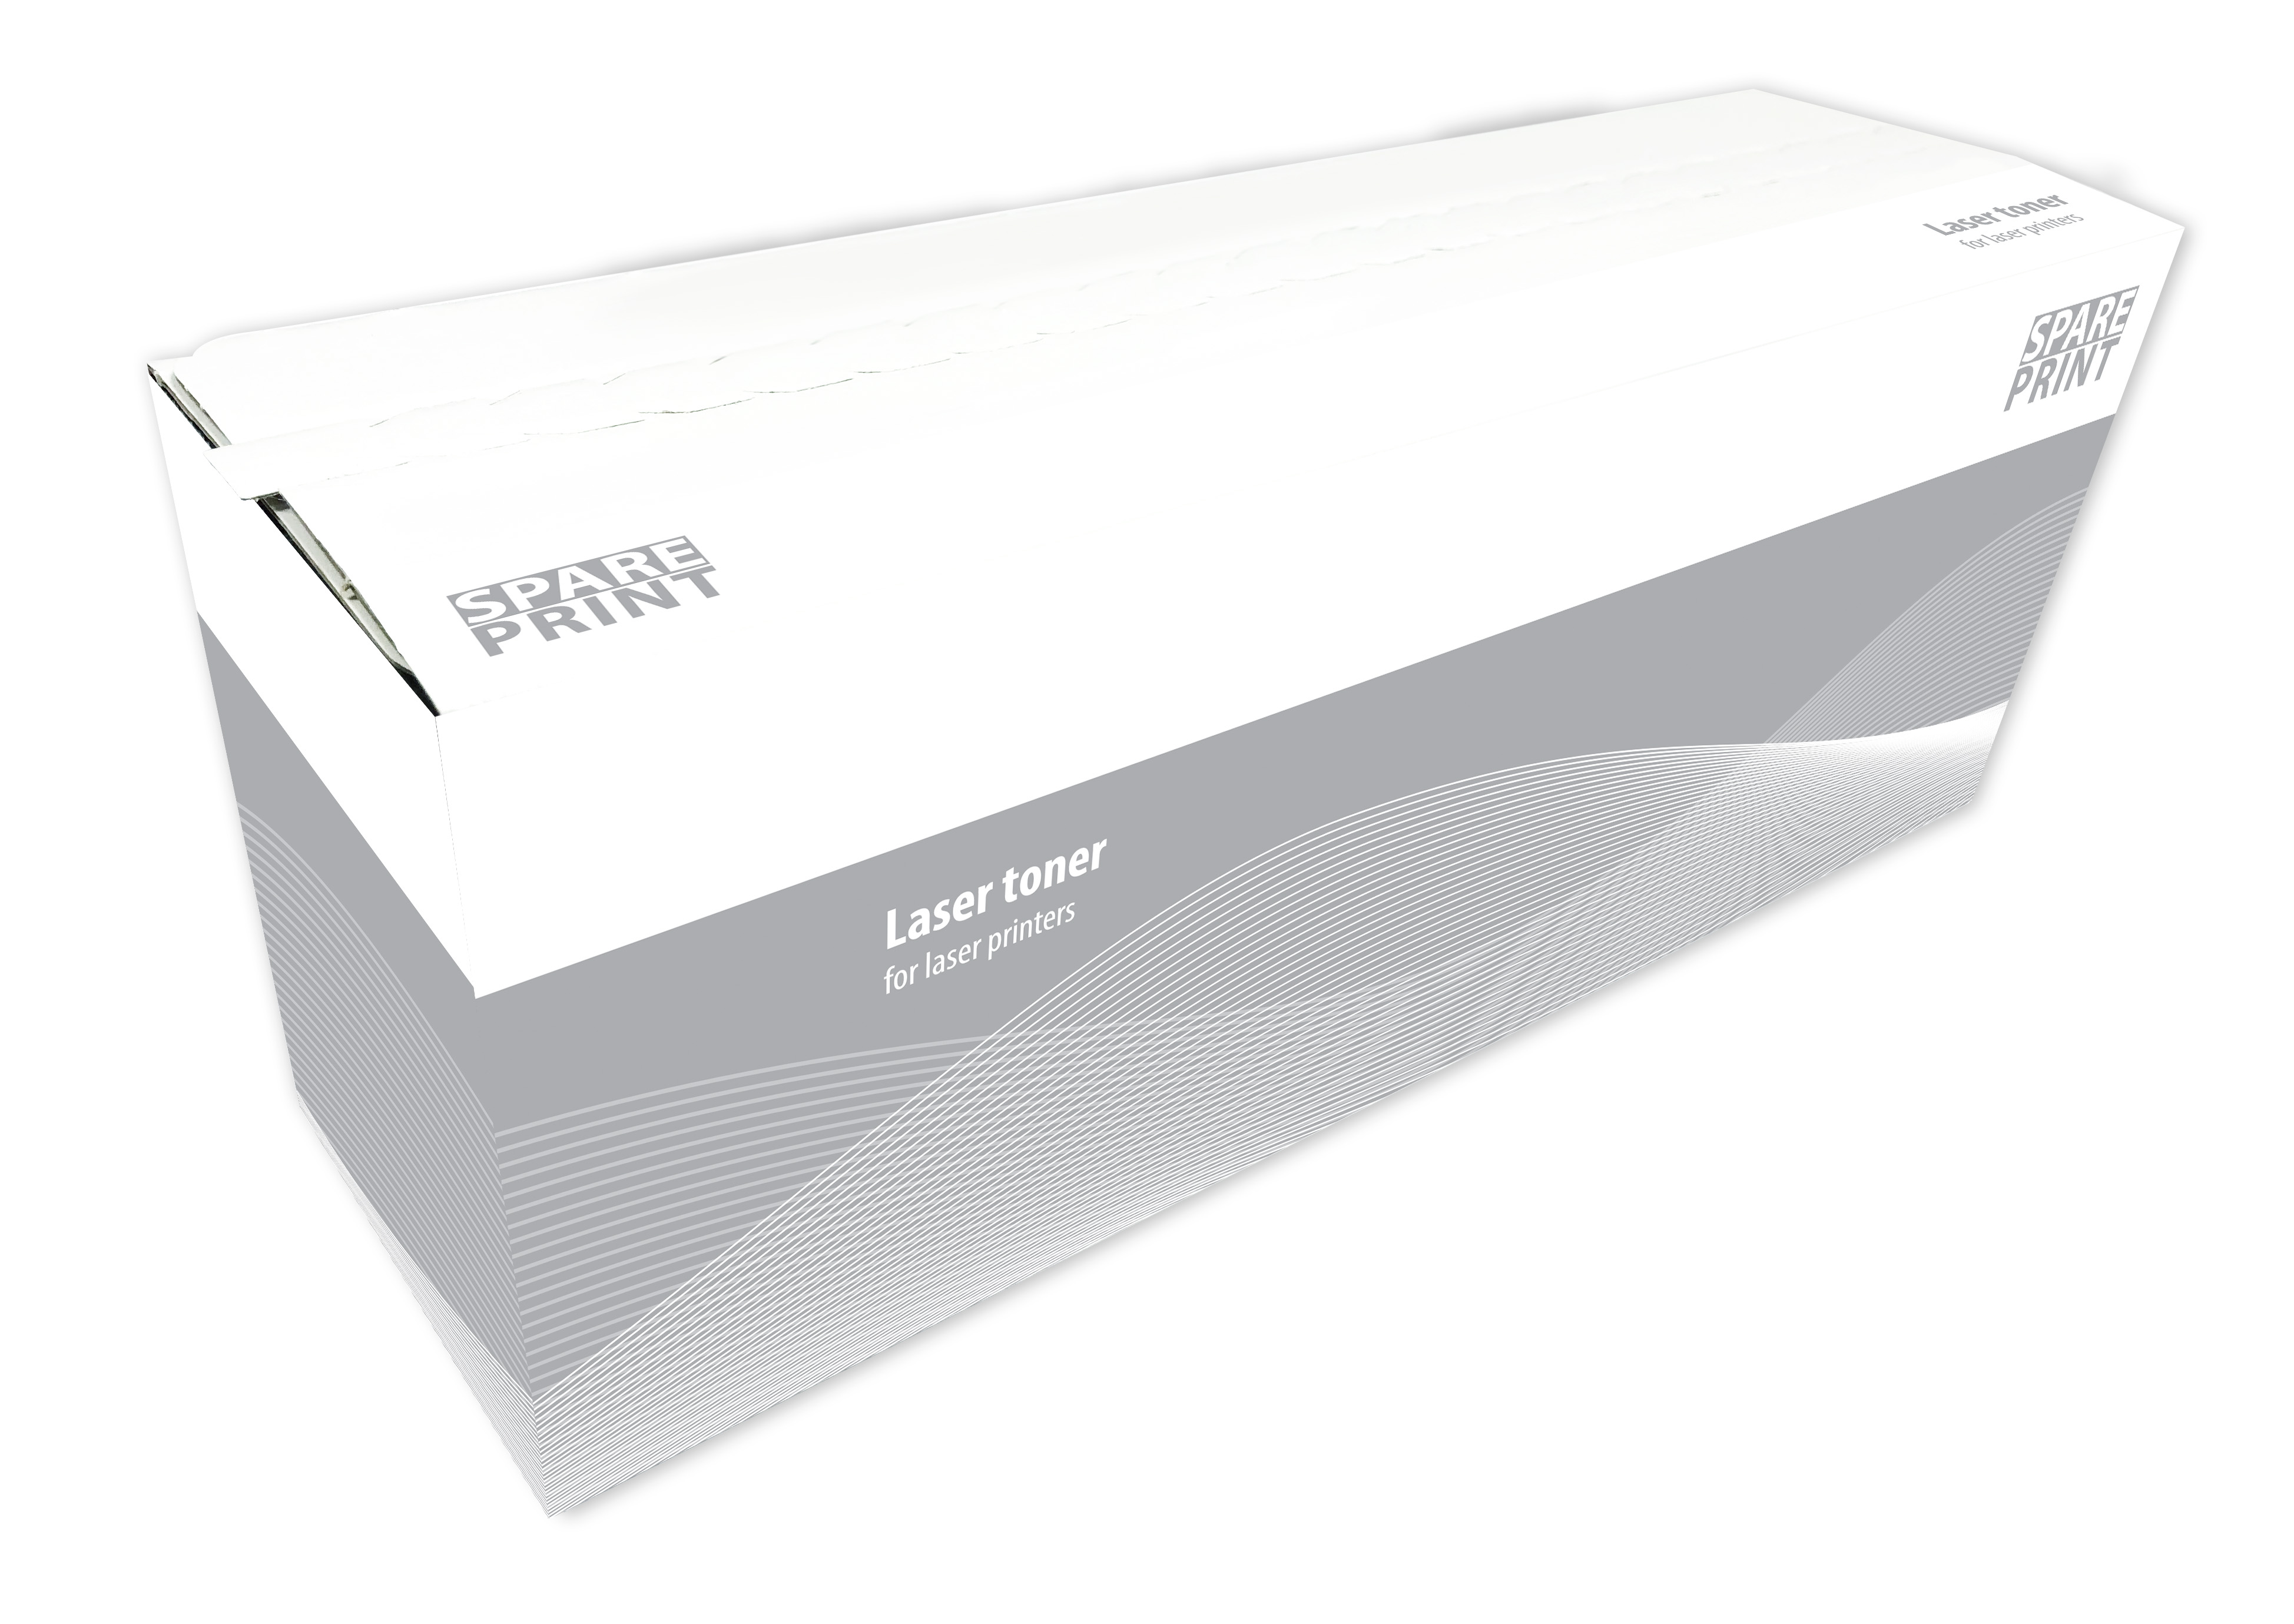 SPARE PRINT Xerox 106R03623 - kompatibilní SPARE PRINT 106R03623 pro tiskárny Xerox